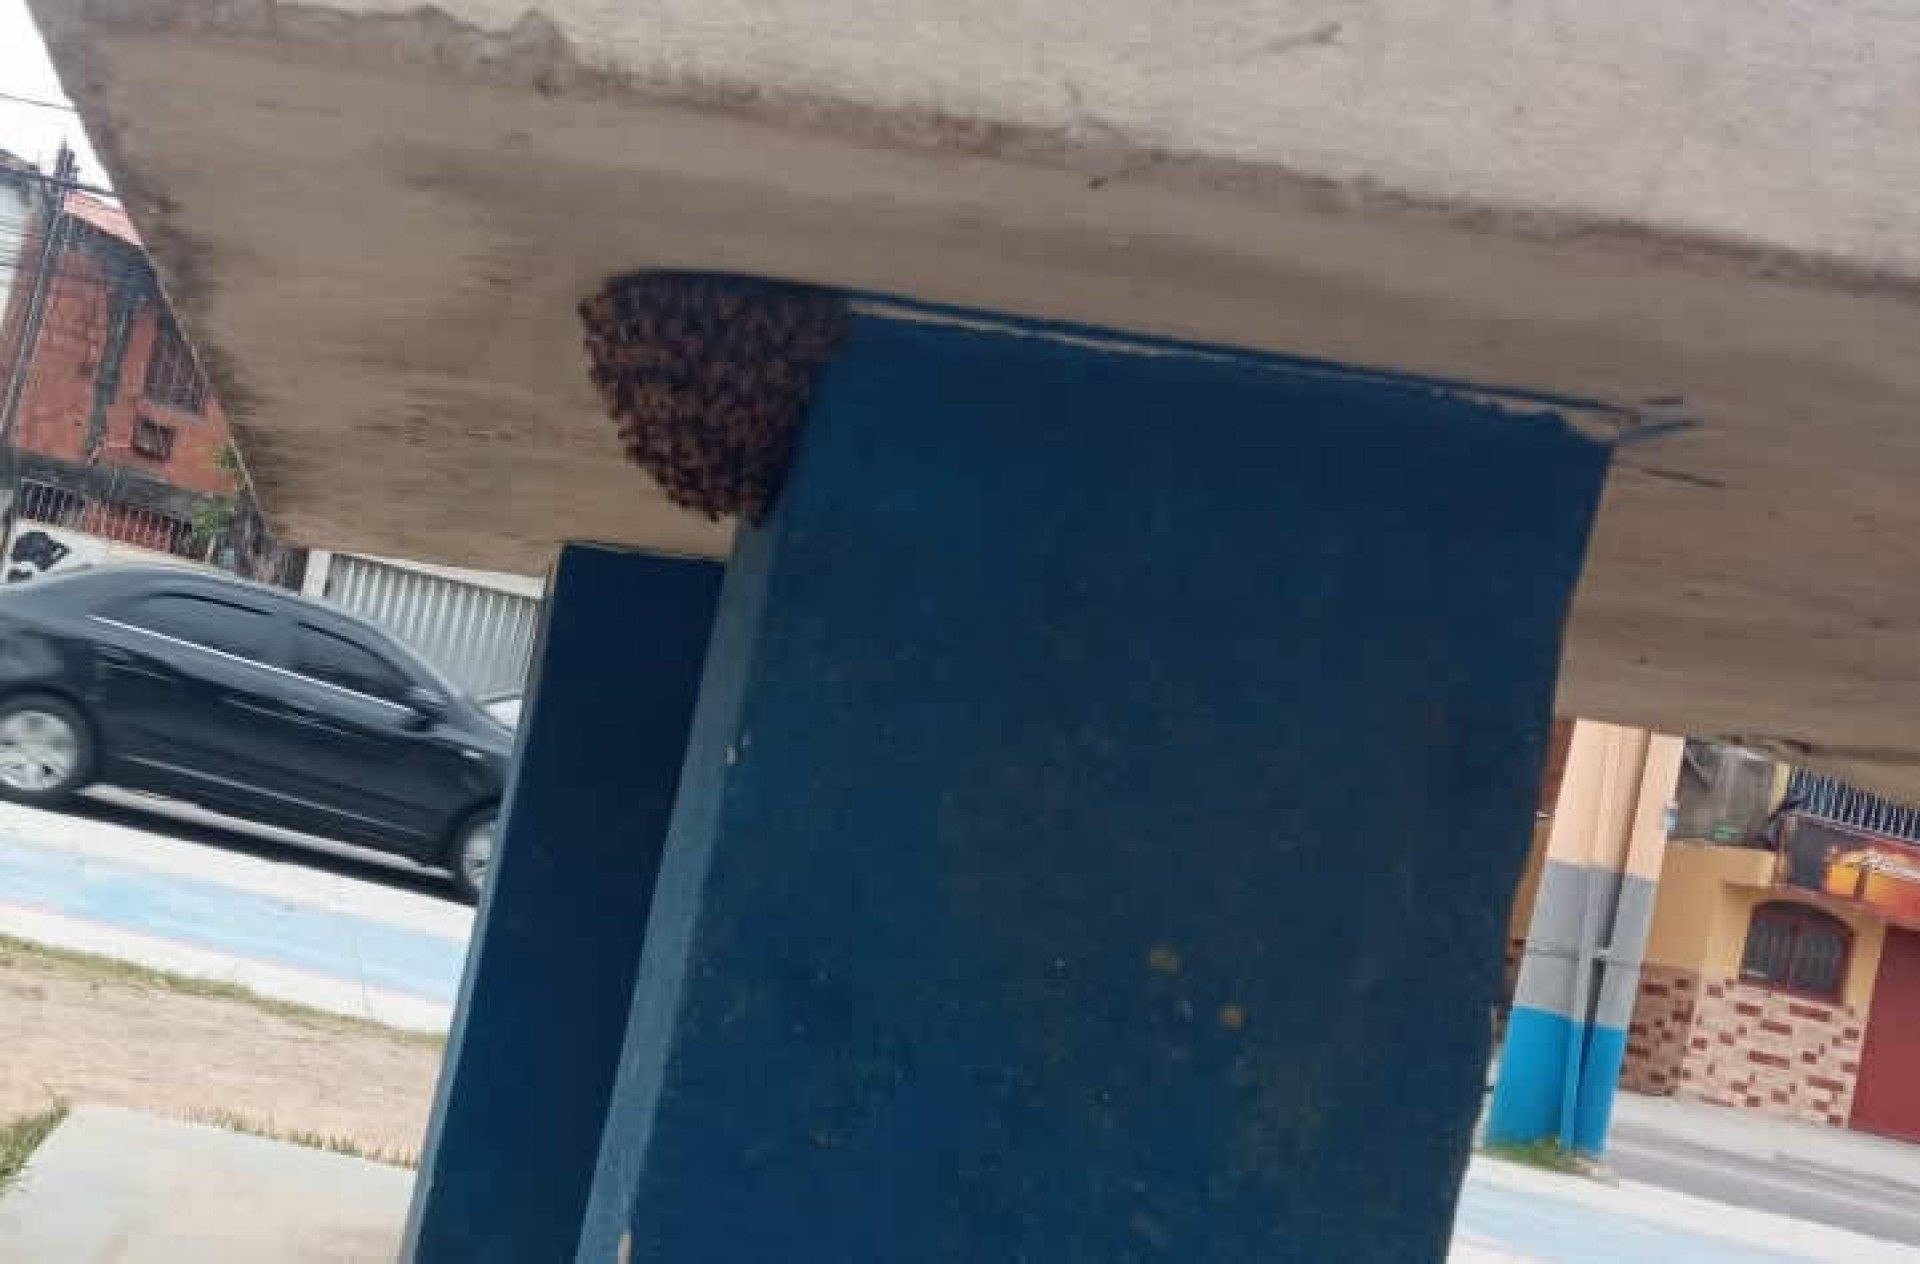 Com a ajuda dos apicultores, a colmeia foi removida e levada para um local adequado - Divulgação